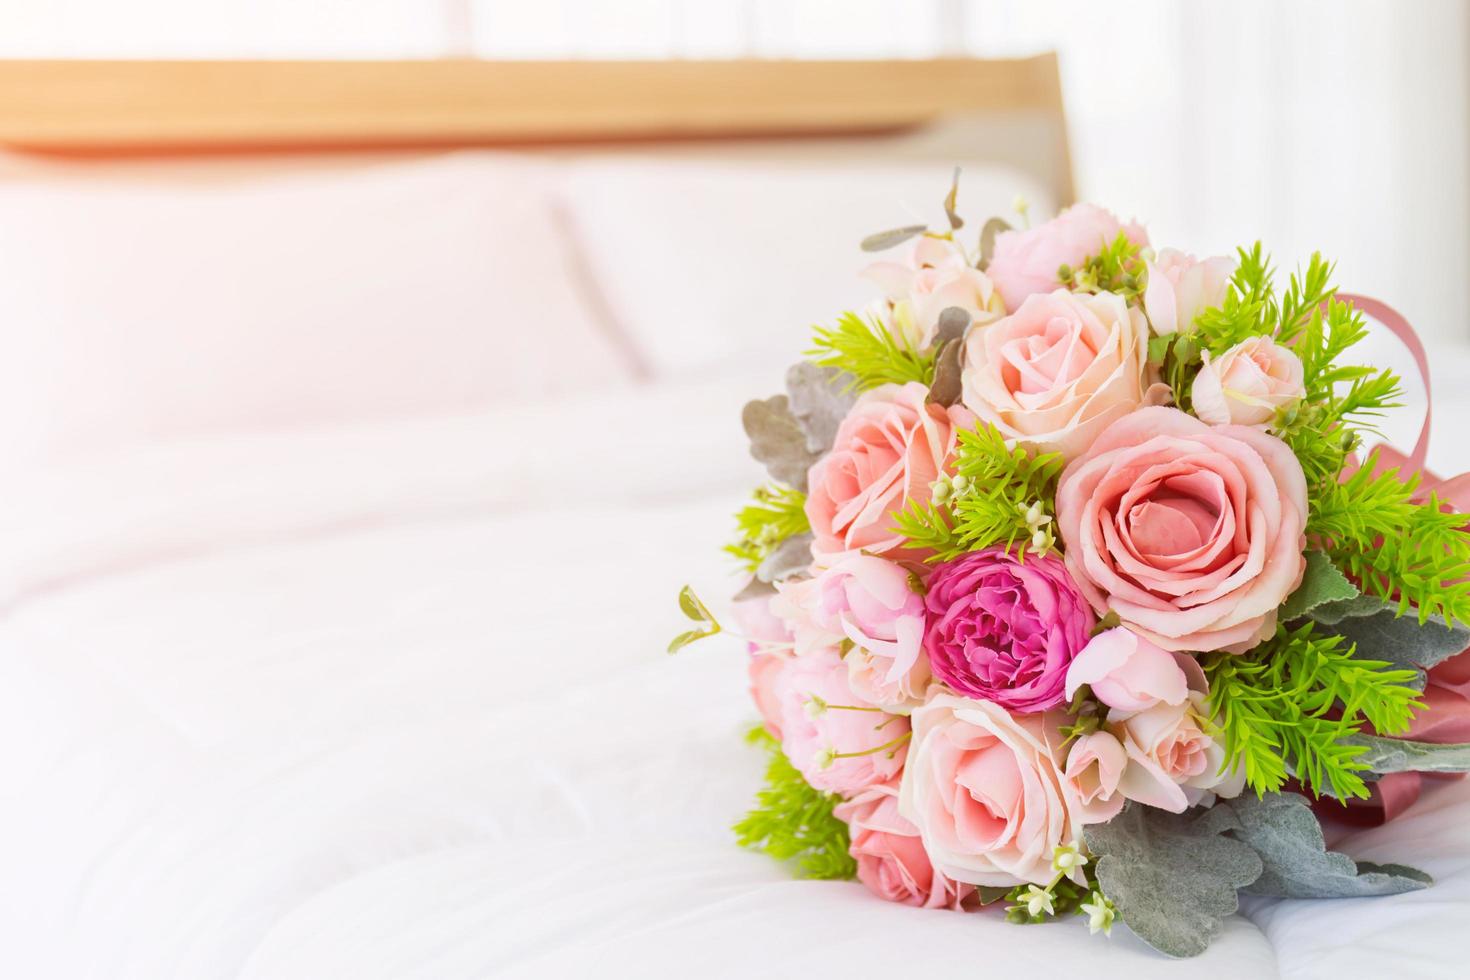 Sehr schöner Blumenstrauß auf einem sauberen weißen Bett. foto